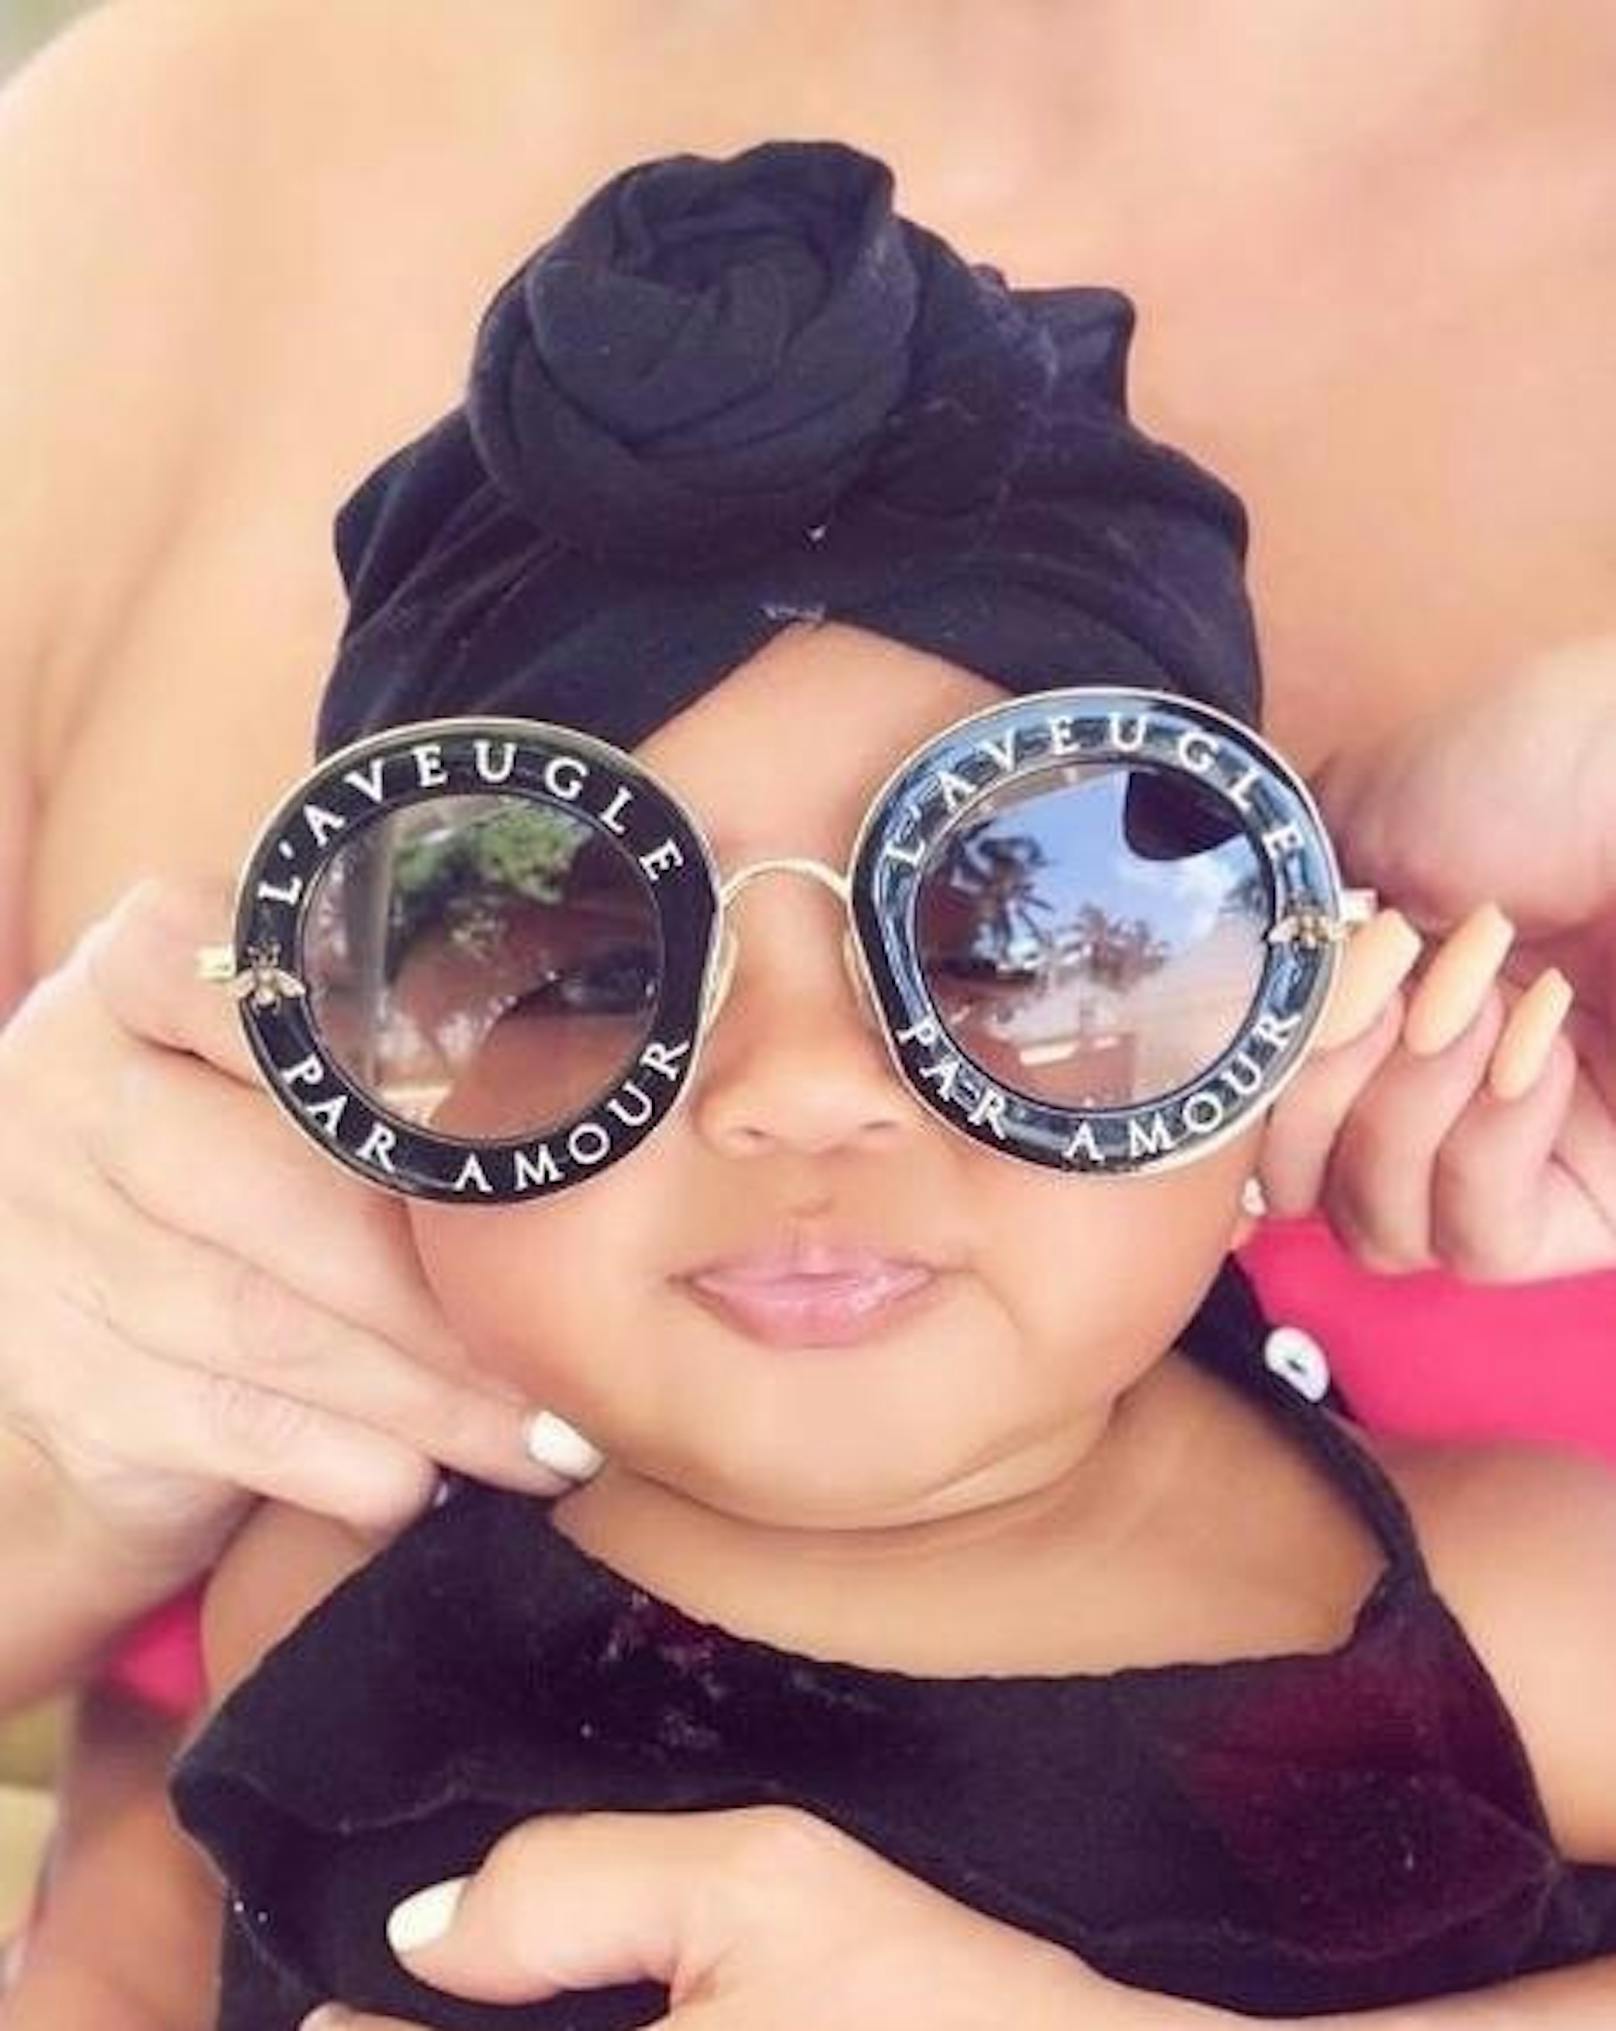 18.10.2018: True Kardashian ist zwar noch ein Baby, macht aber bereits jetzt eine traumhafte Figur als Model. Die über 500 Euro teuer Gucci-Sonnenbrille von Mama Kloe scheint nur für sie gemacht worden zu sein.